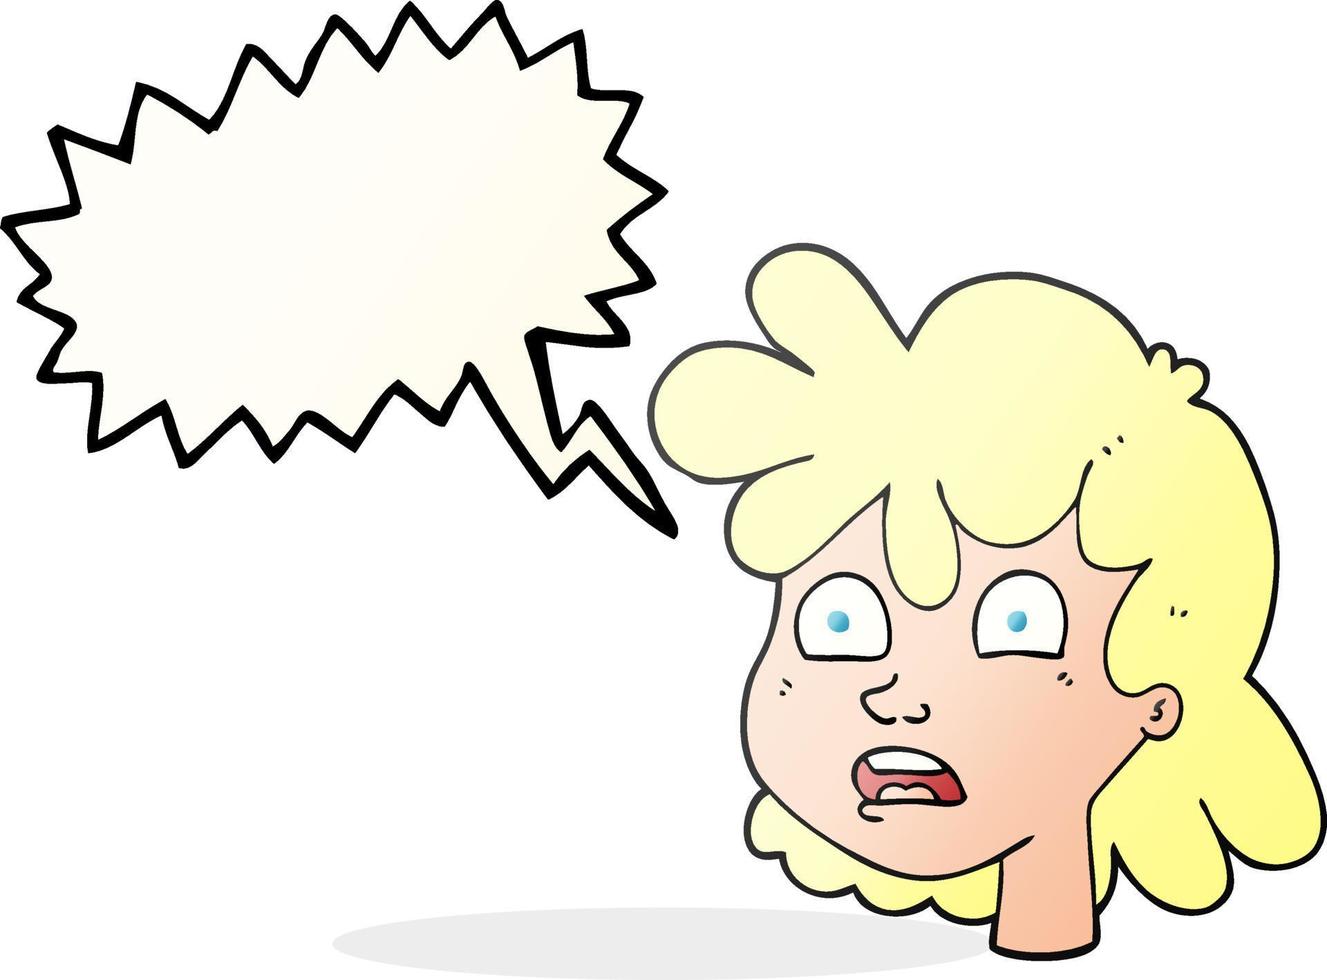 rosto feminino de desenho animado de bolha de fala desenhada à mão livre vetor